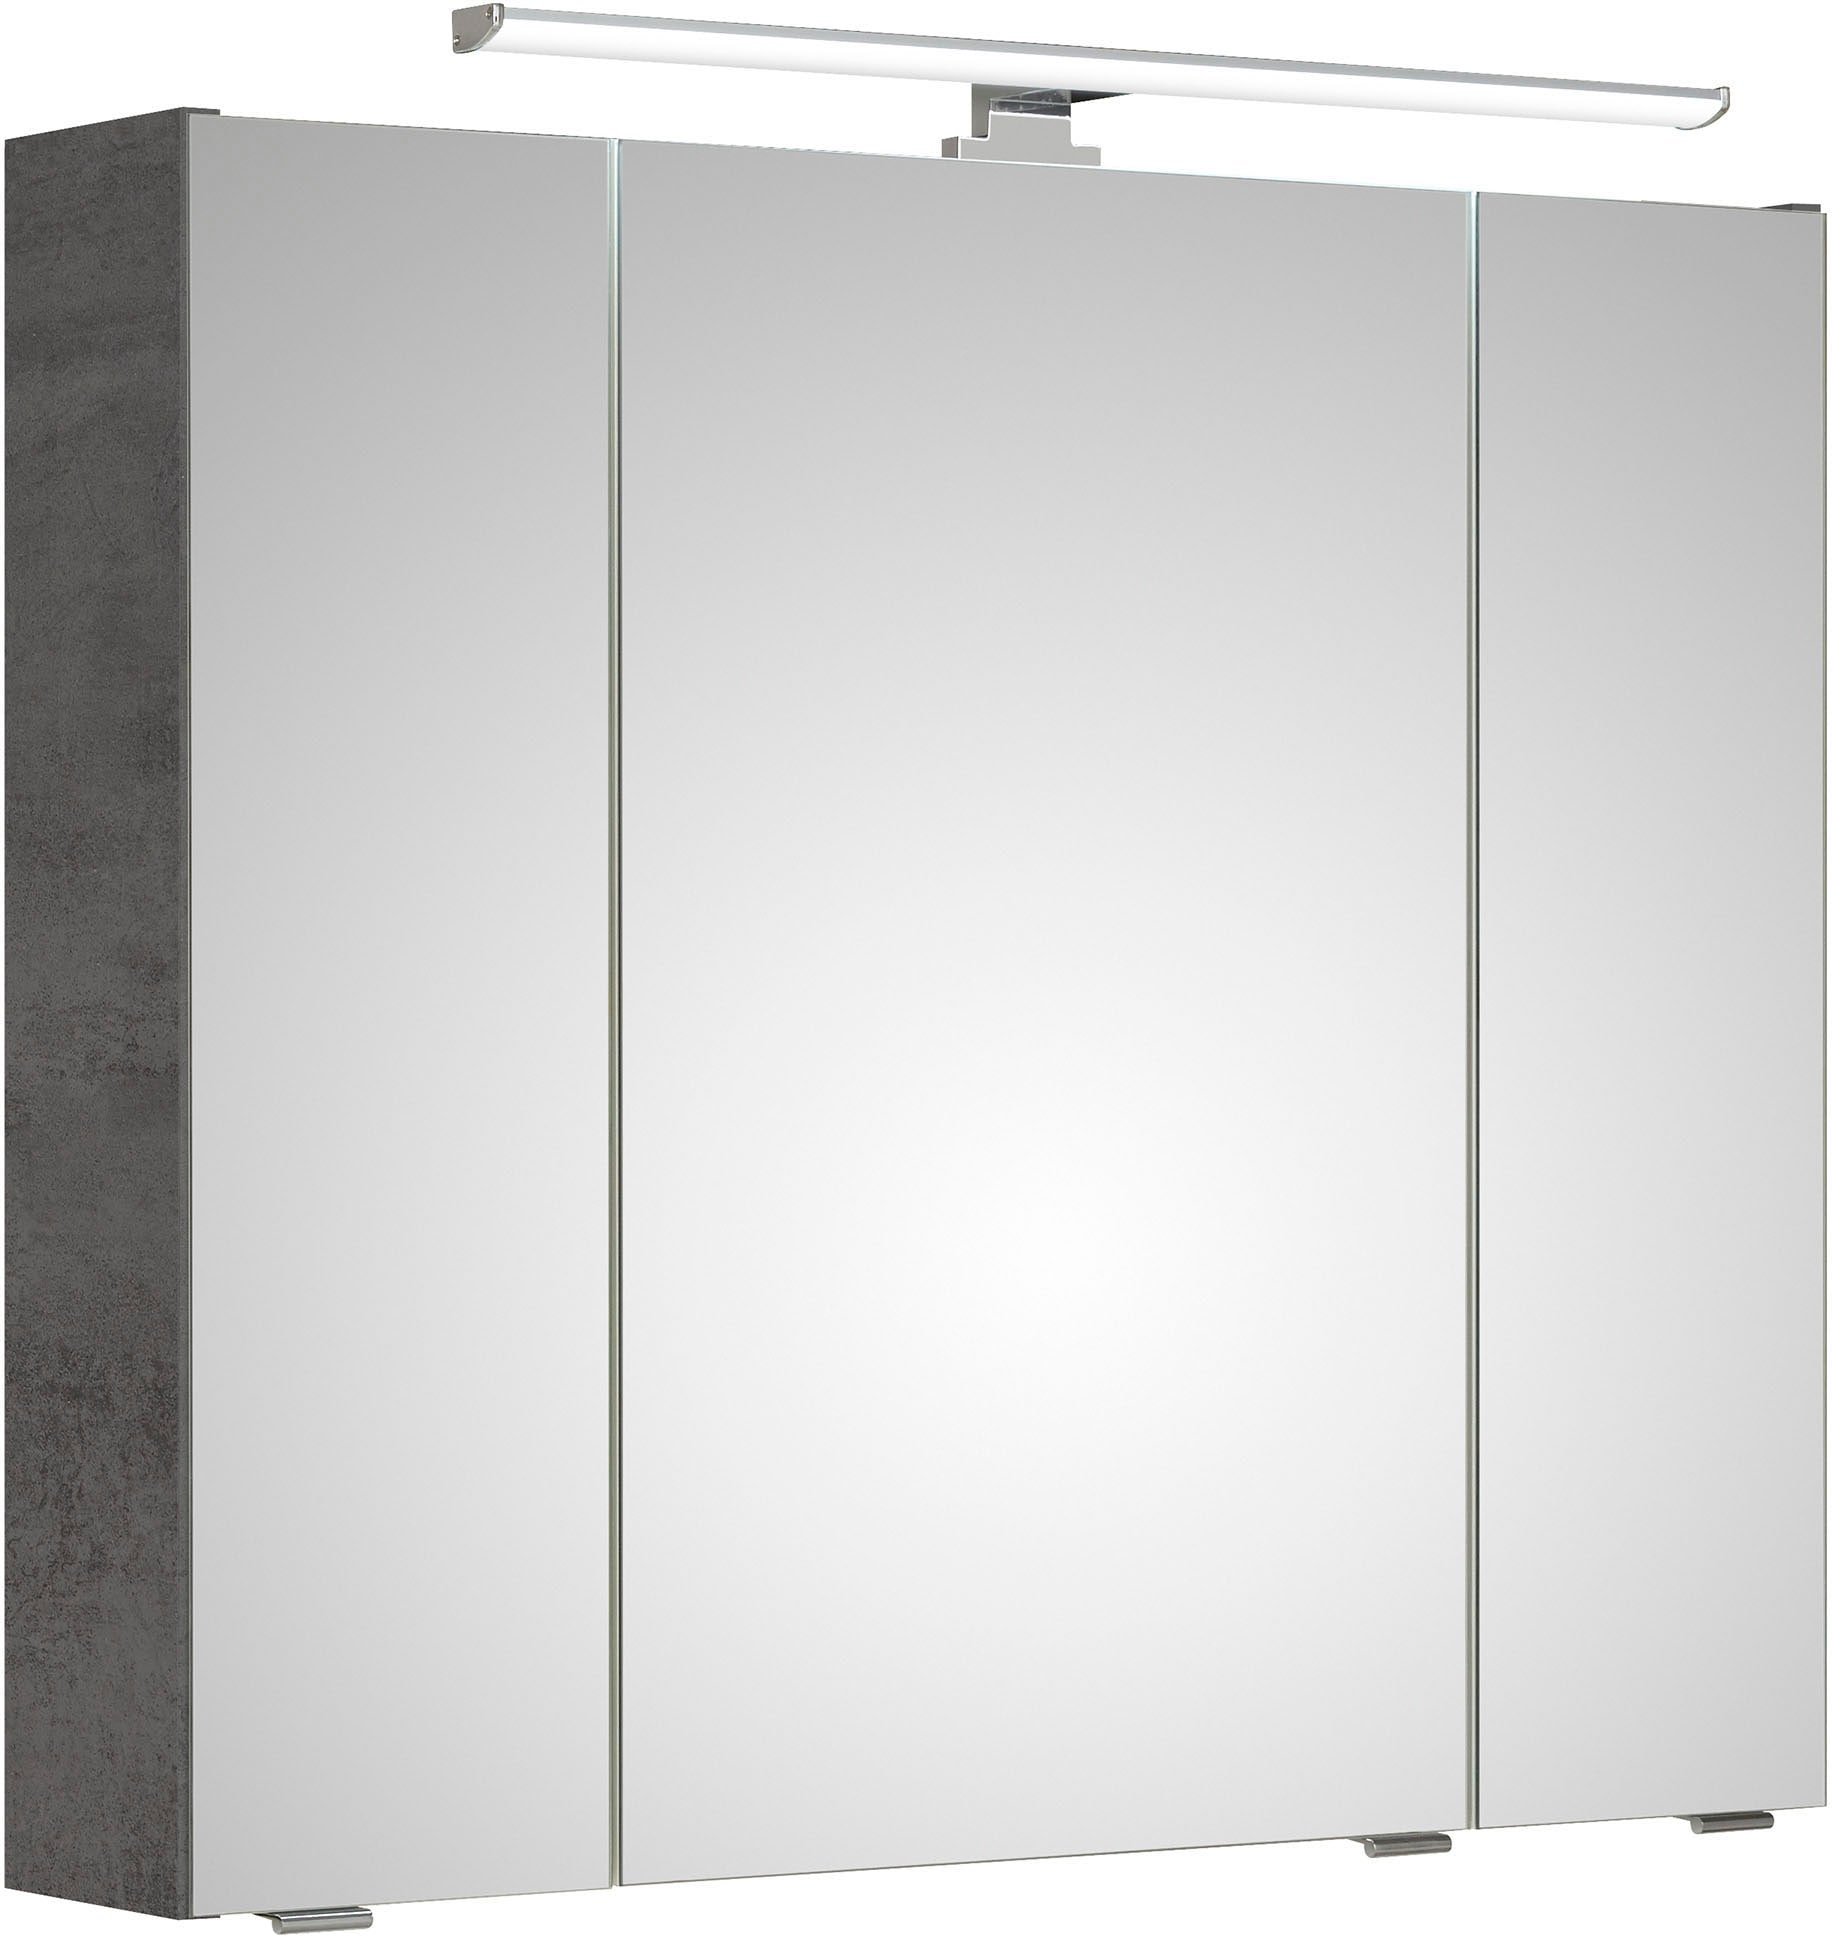 PELIPAL Badezimmerspiegelschrank »Quickset 945« bei OTTO